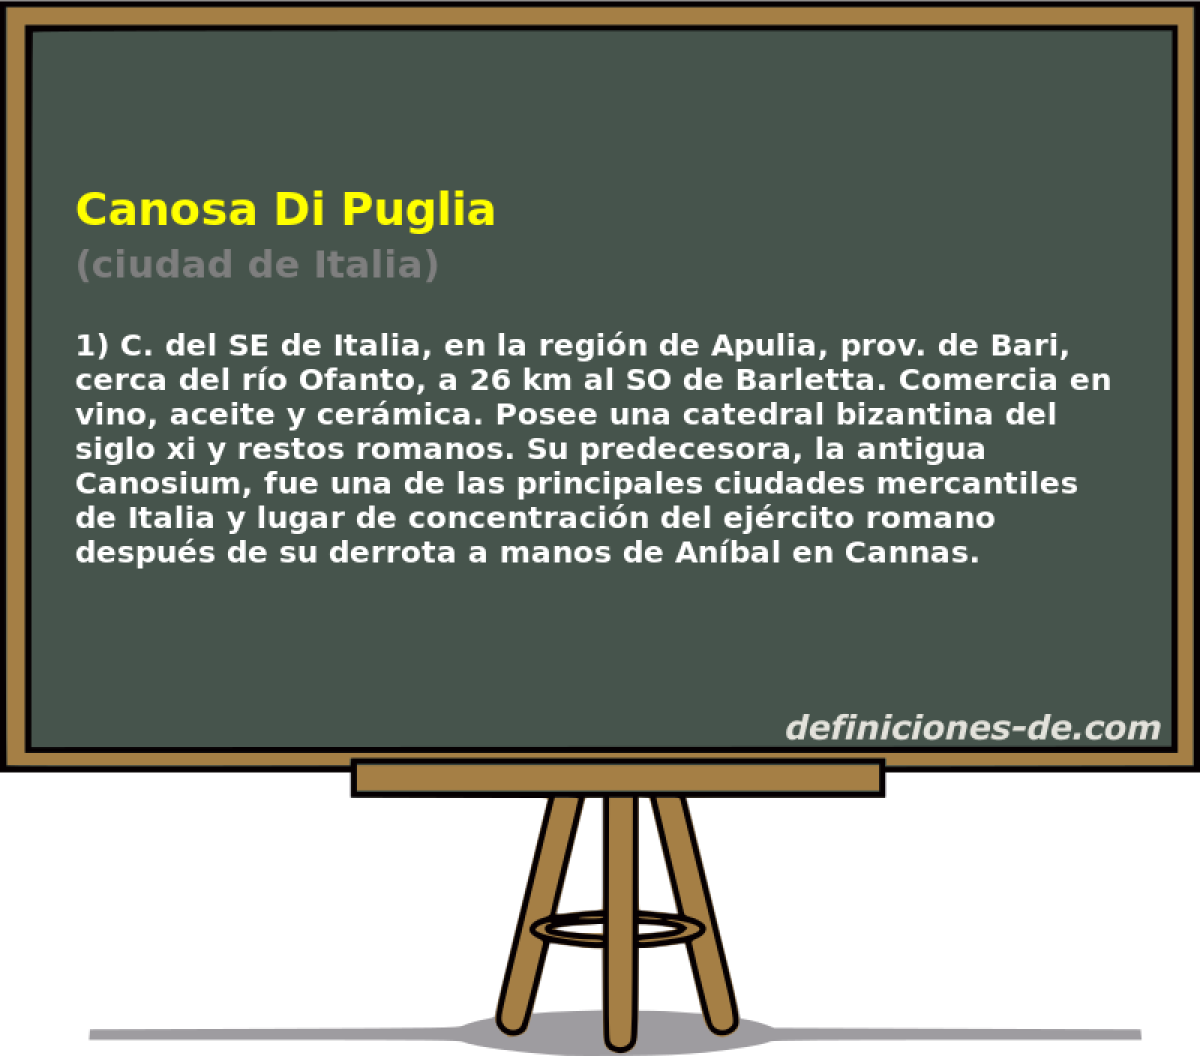 Canosa Di Puglia (ciudad de Italia)